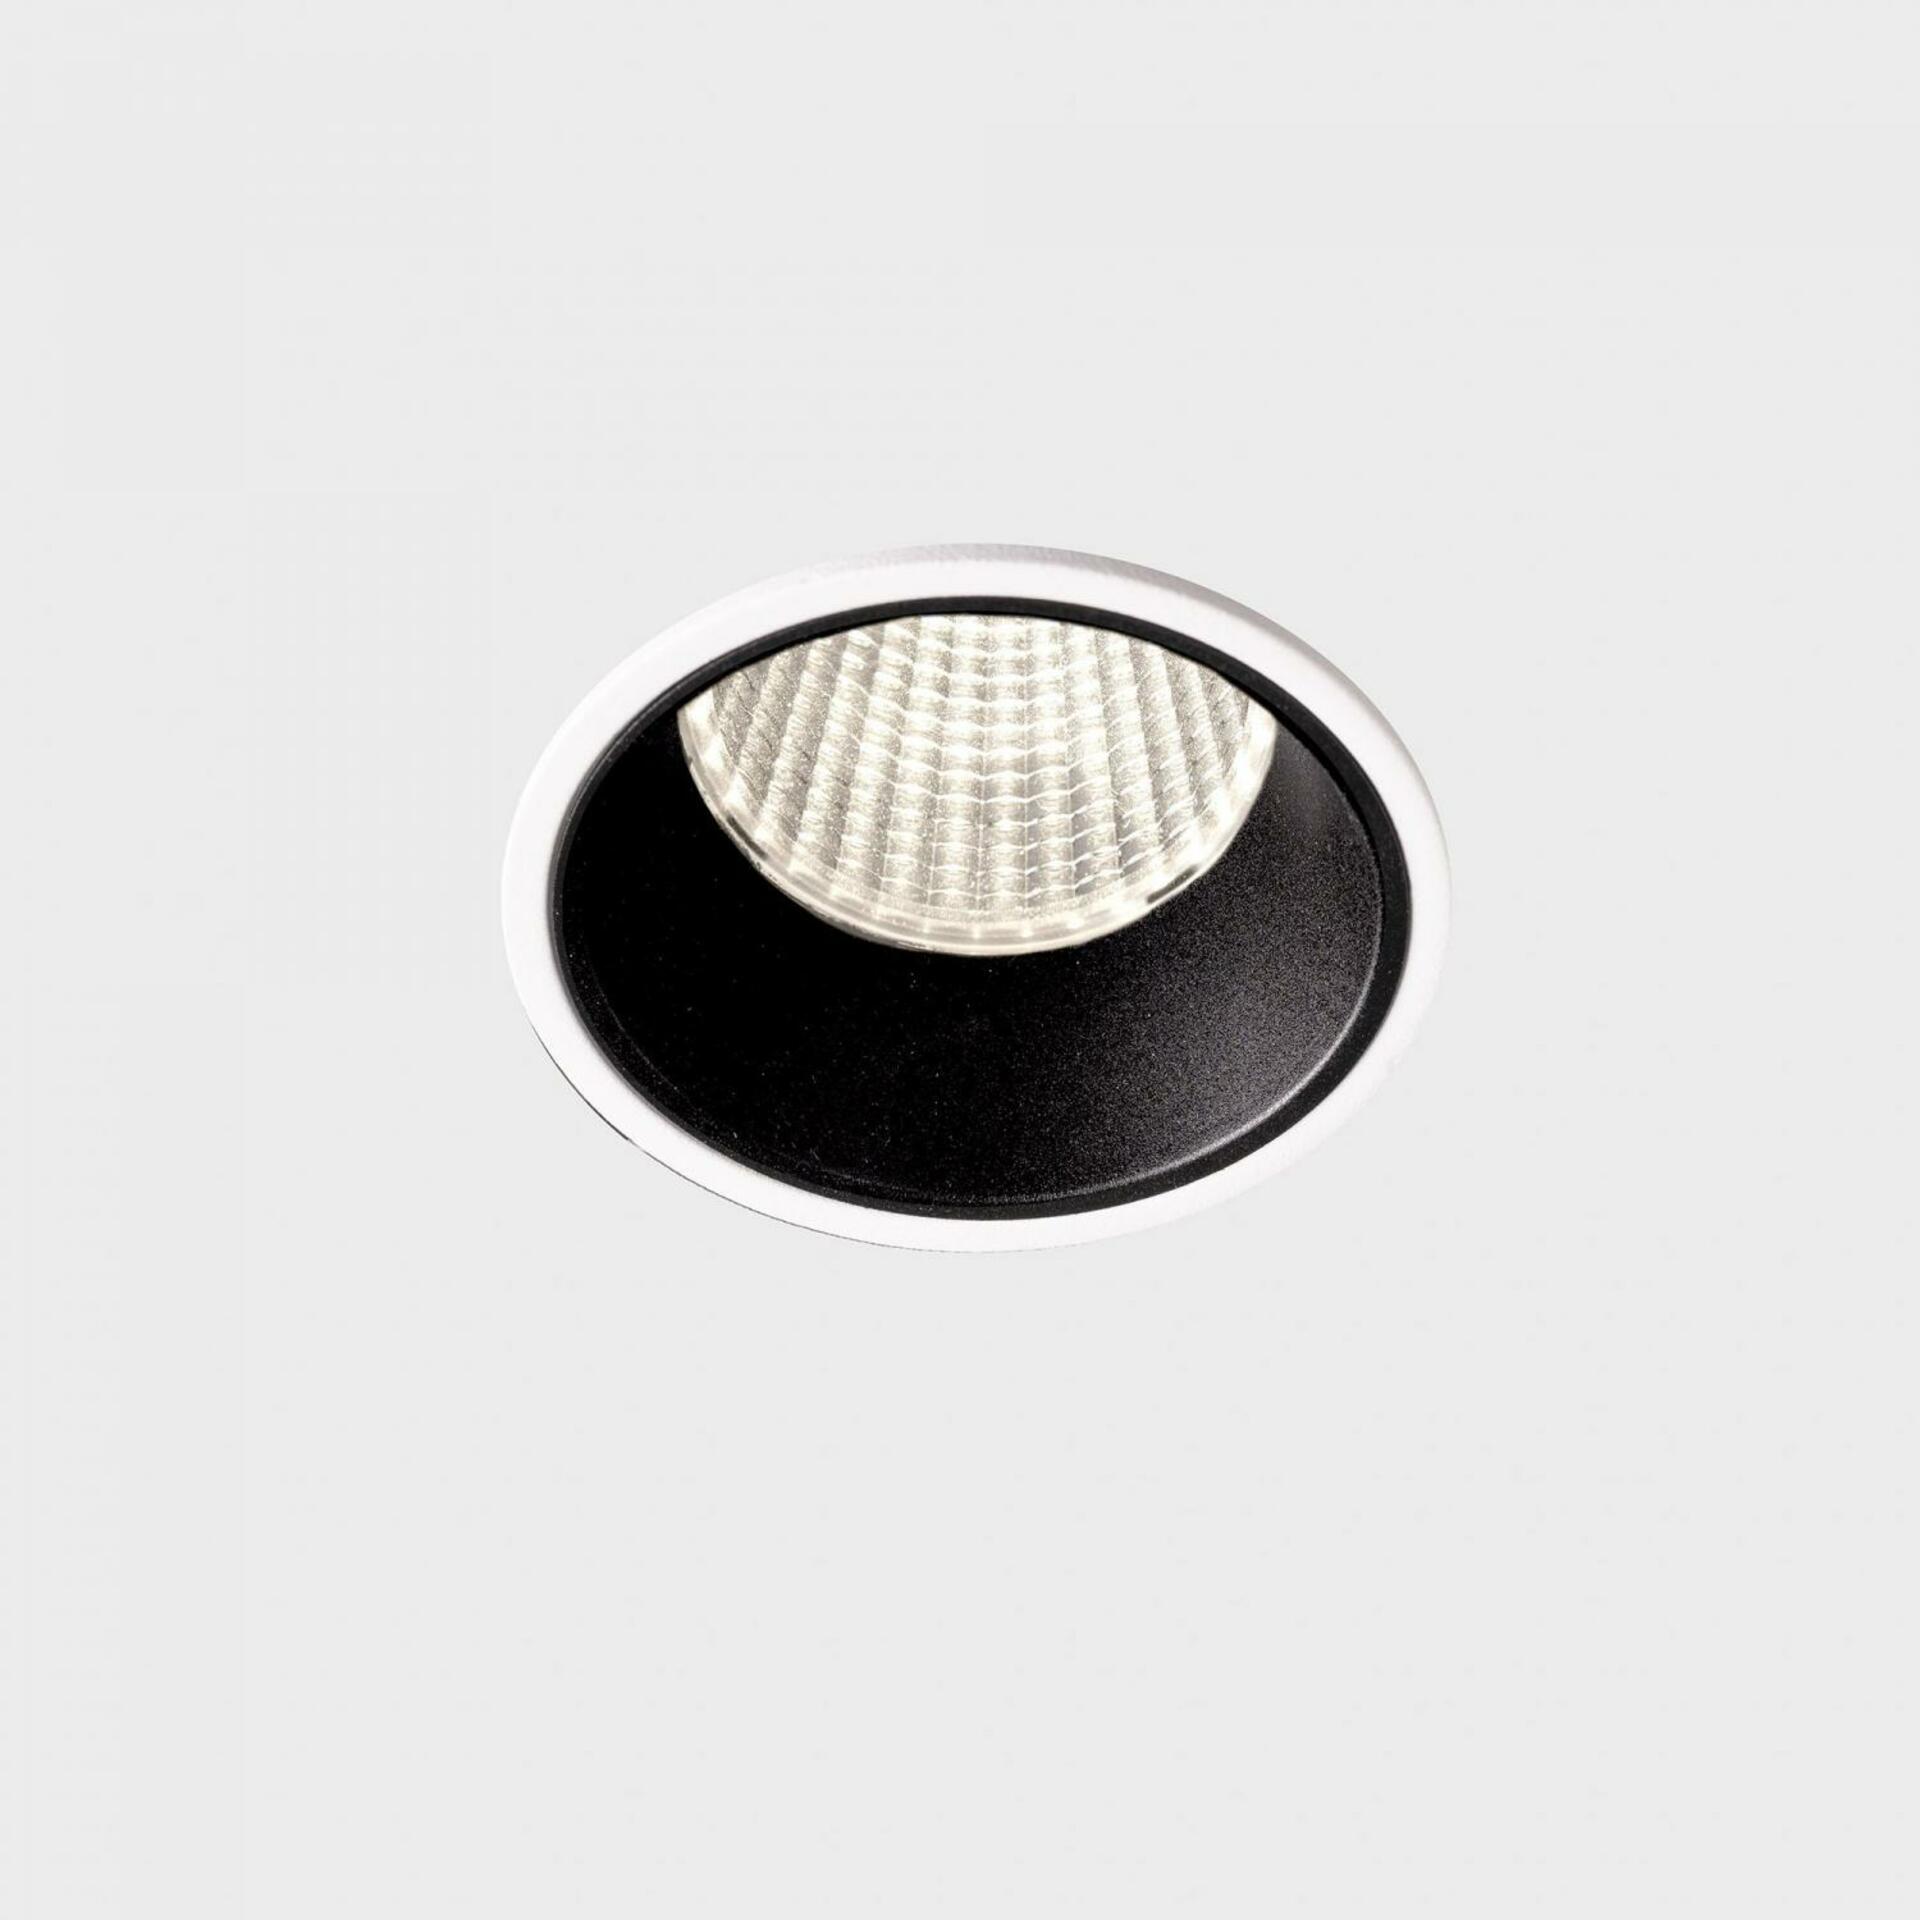 KOHL LIGHTING KOHL-Lighting VERSUS zapuštěné svítidlo s rámečkem pr. 60 mm bílá-černá 38° 5 W CRI 80 4000K PUSH